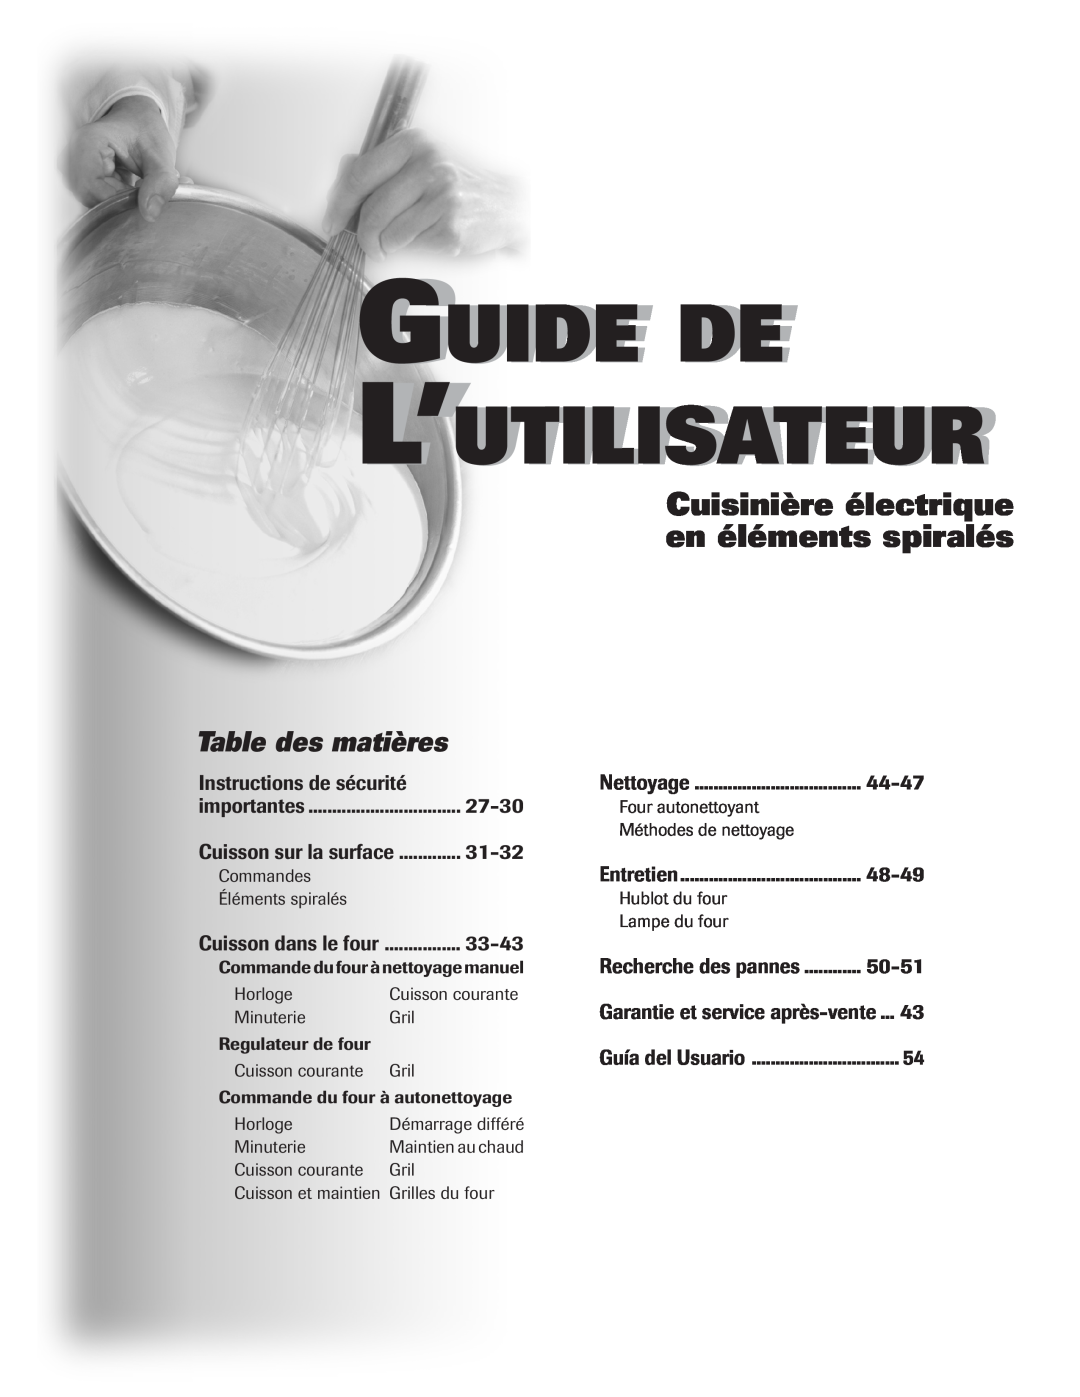 Maytag Oven Guide De L’Utilisateur, Cuisinière électrique en éléments spiralés, Table des matières, 27-30, 31-32, 33-43 